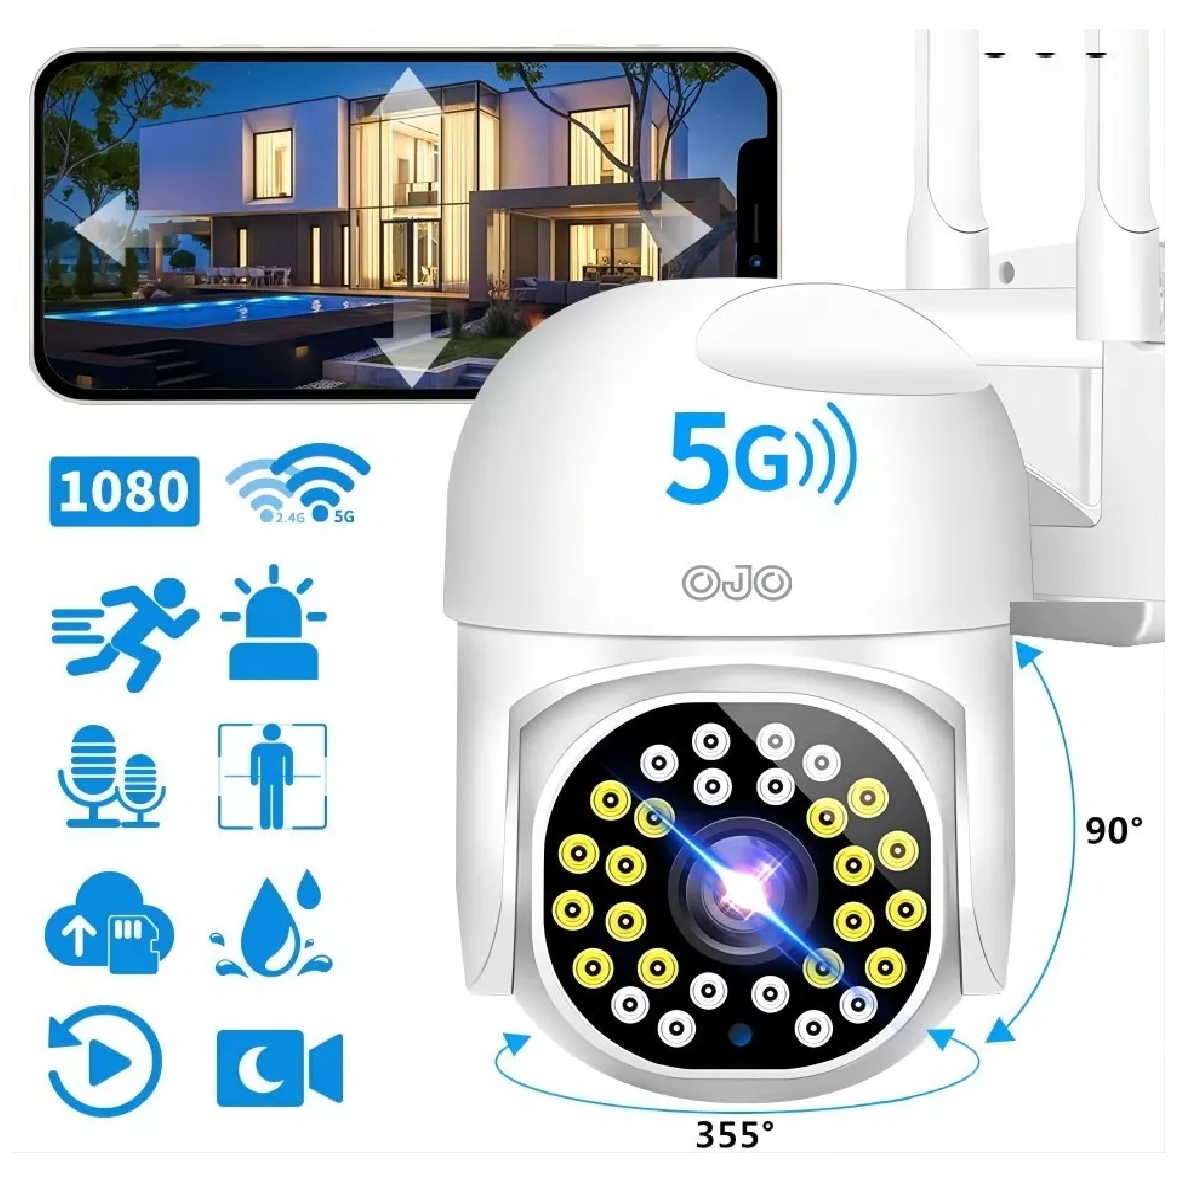 TP-Link TAPO C200 - Cámara IP WiFi 360° Cámara de Vigilancia FHD  1080p,Visión nocturna, Notificaciones en tiempo real, Admite tarjeta  SD,Detección de